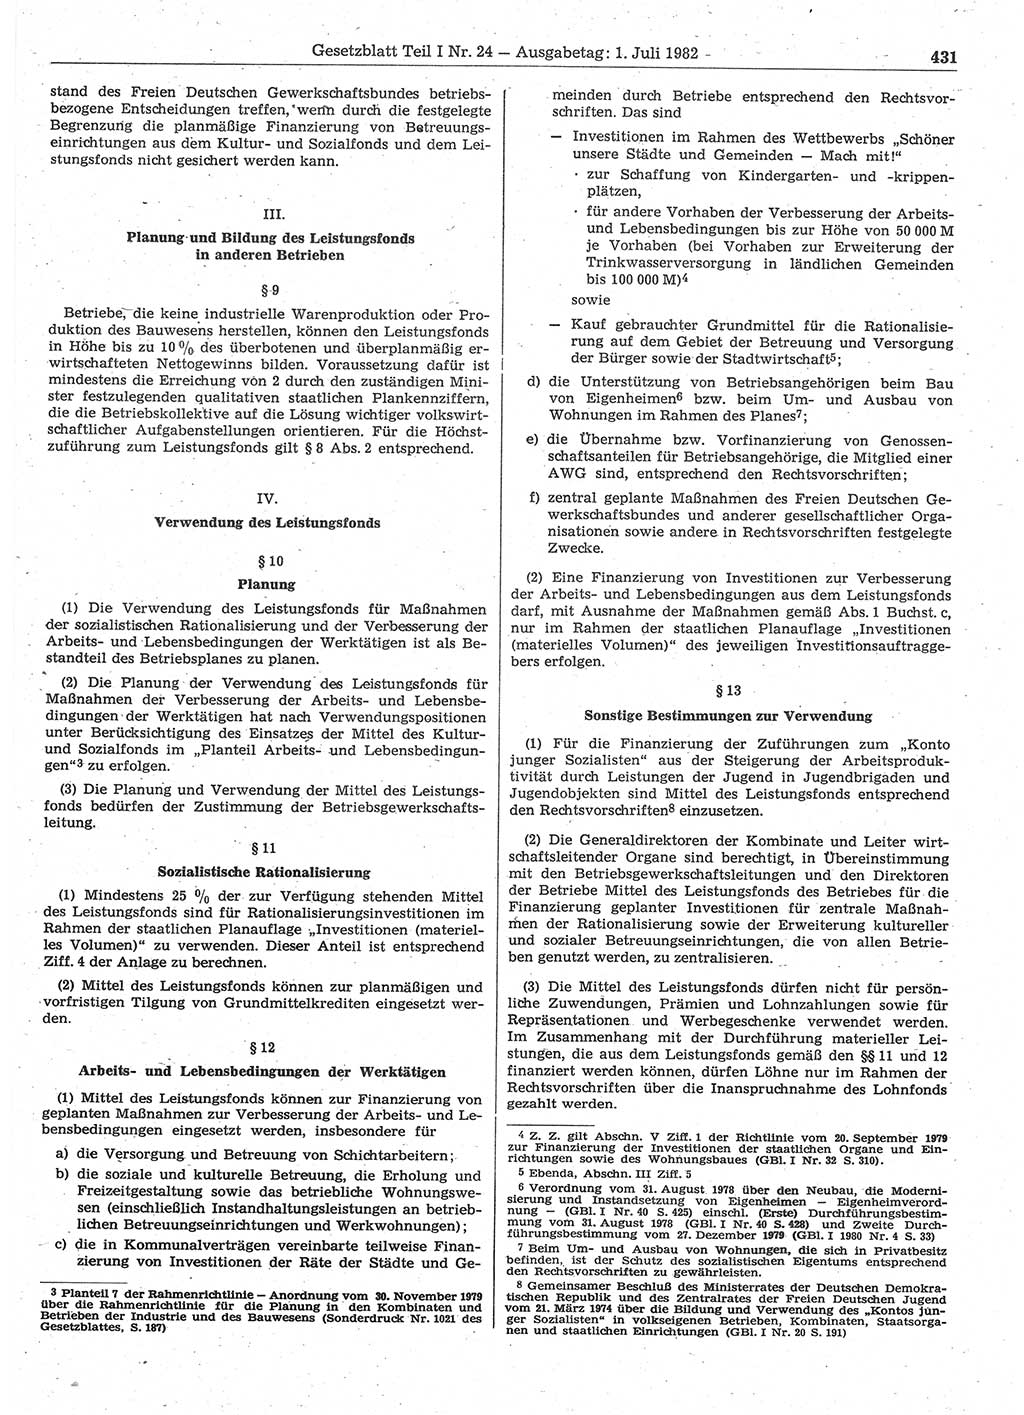 Gesetzblatt (GBl.) der Deutschen Demokratischen Republik (DDR) Teil Ⅰ 1982, Seite 431 (GBl. DDR Ⅰ 1982, S. 431)